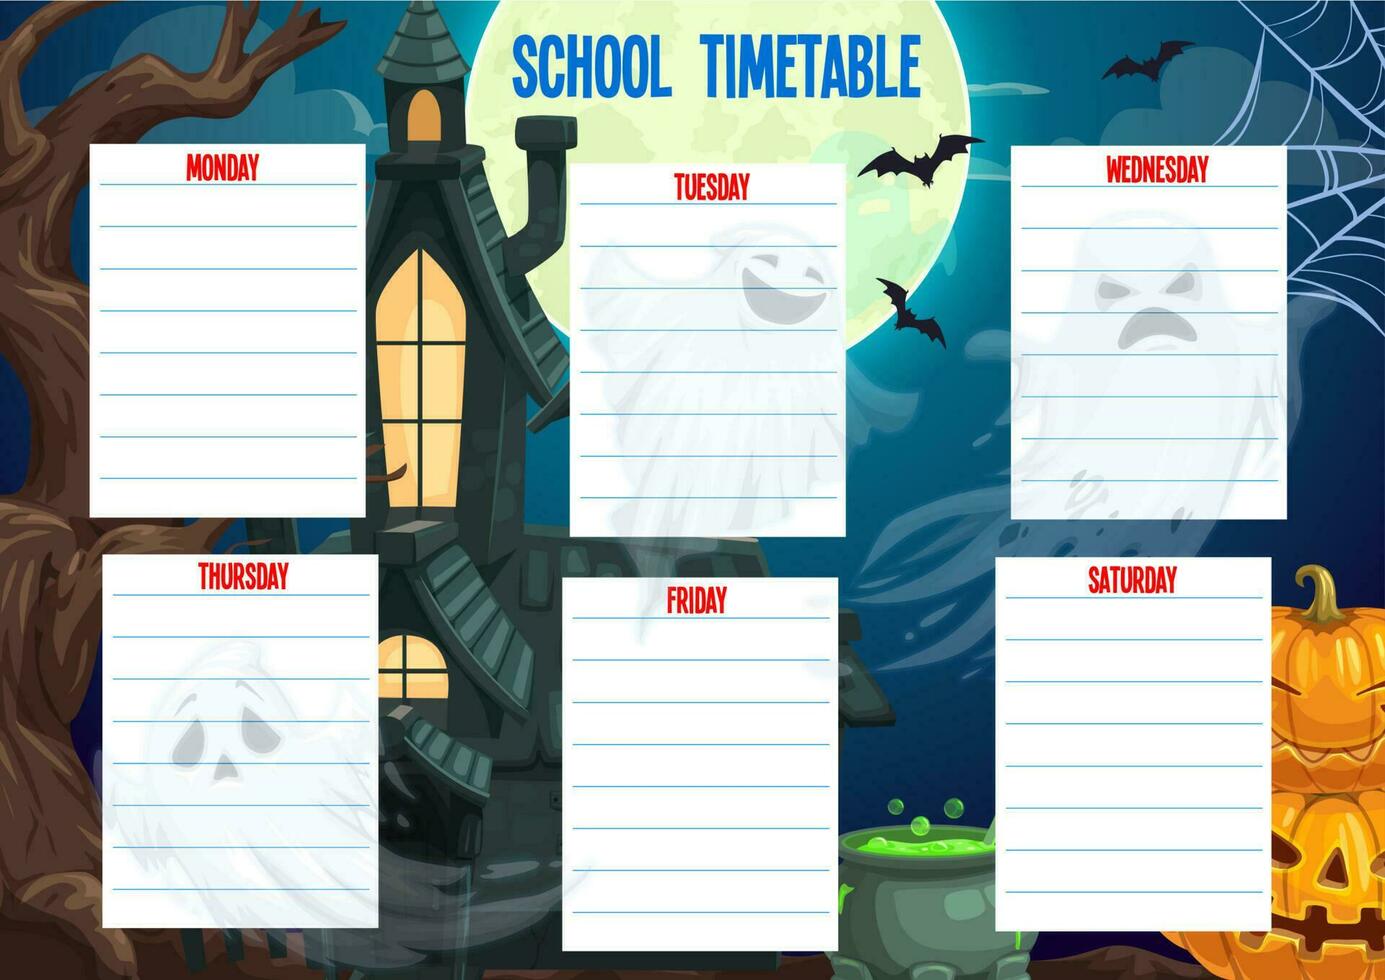 School timetable schedule Halloween weekly planner vector